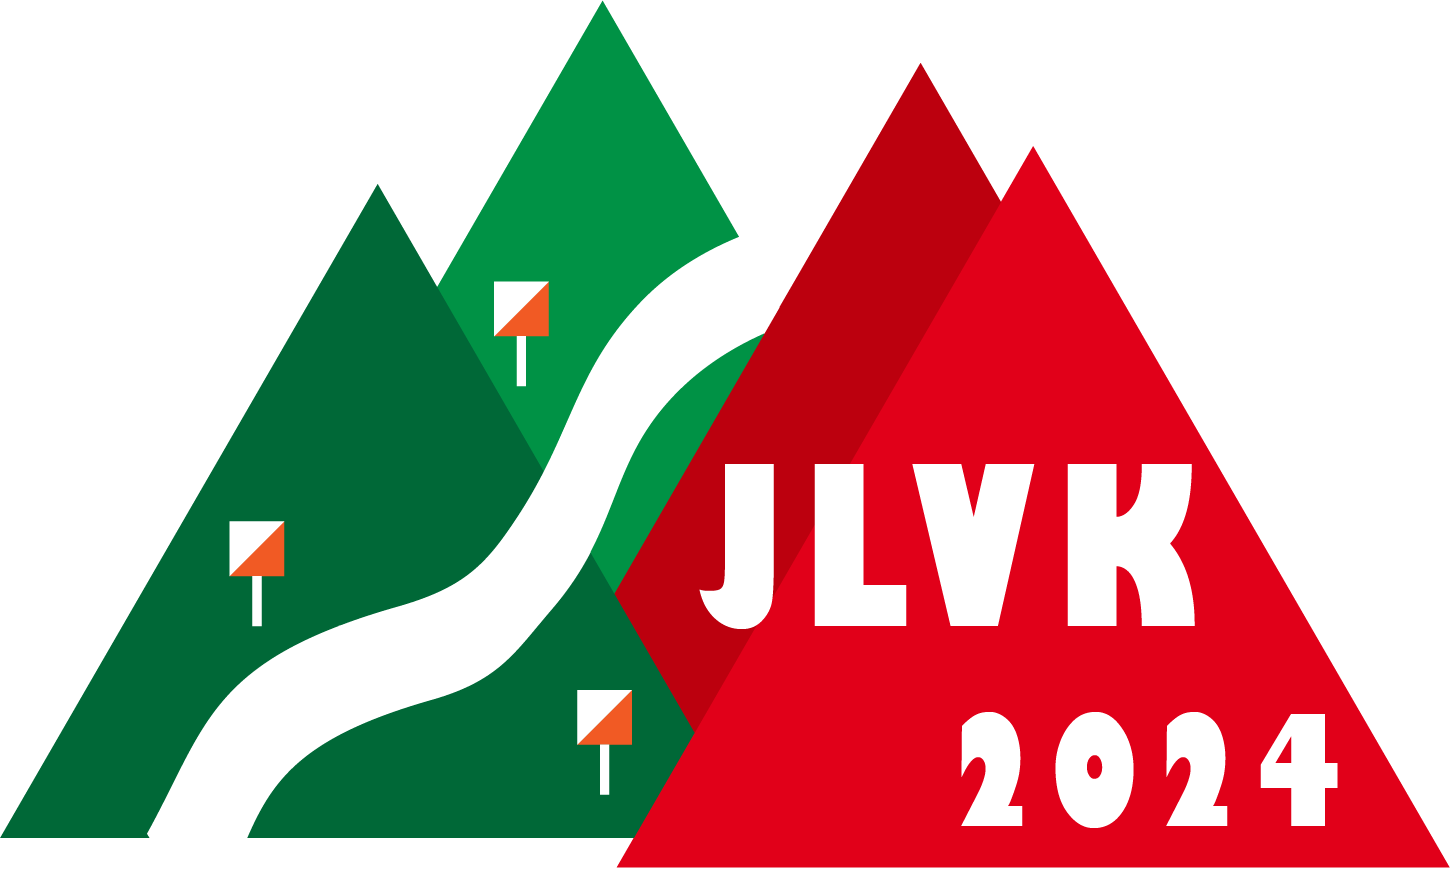 JLVK 2024 logo